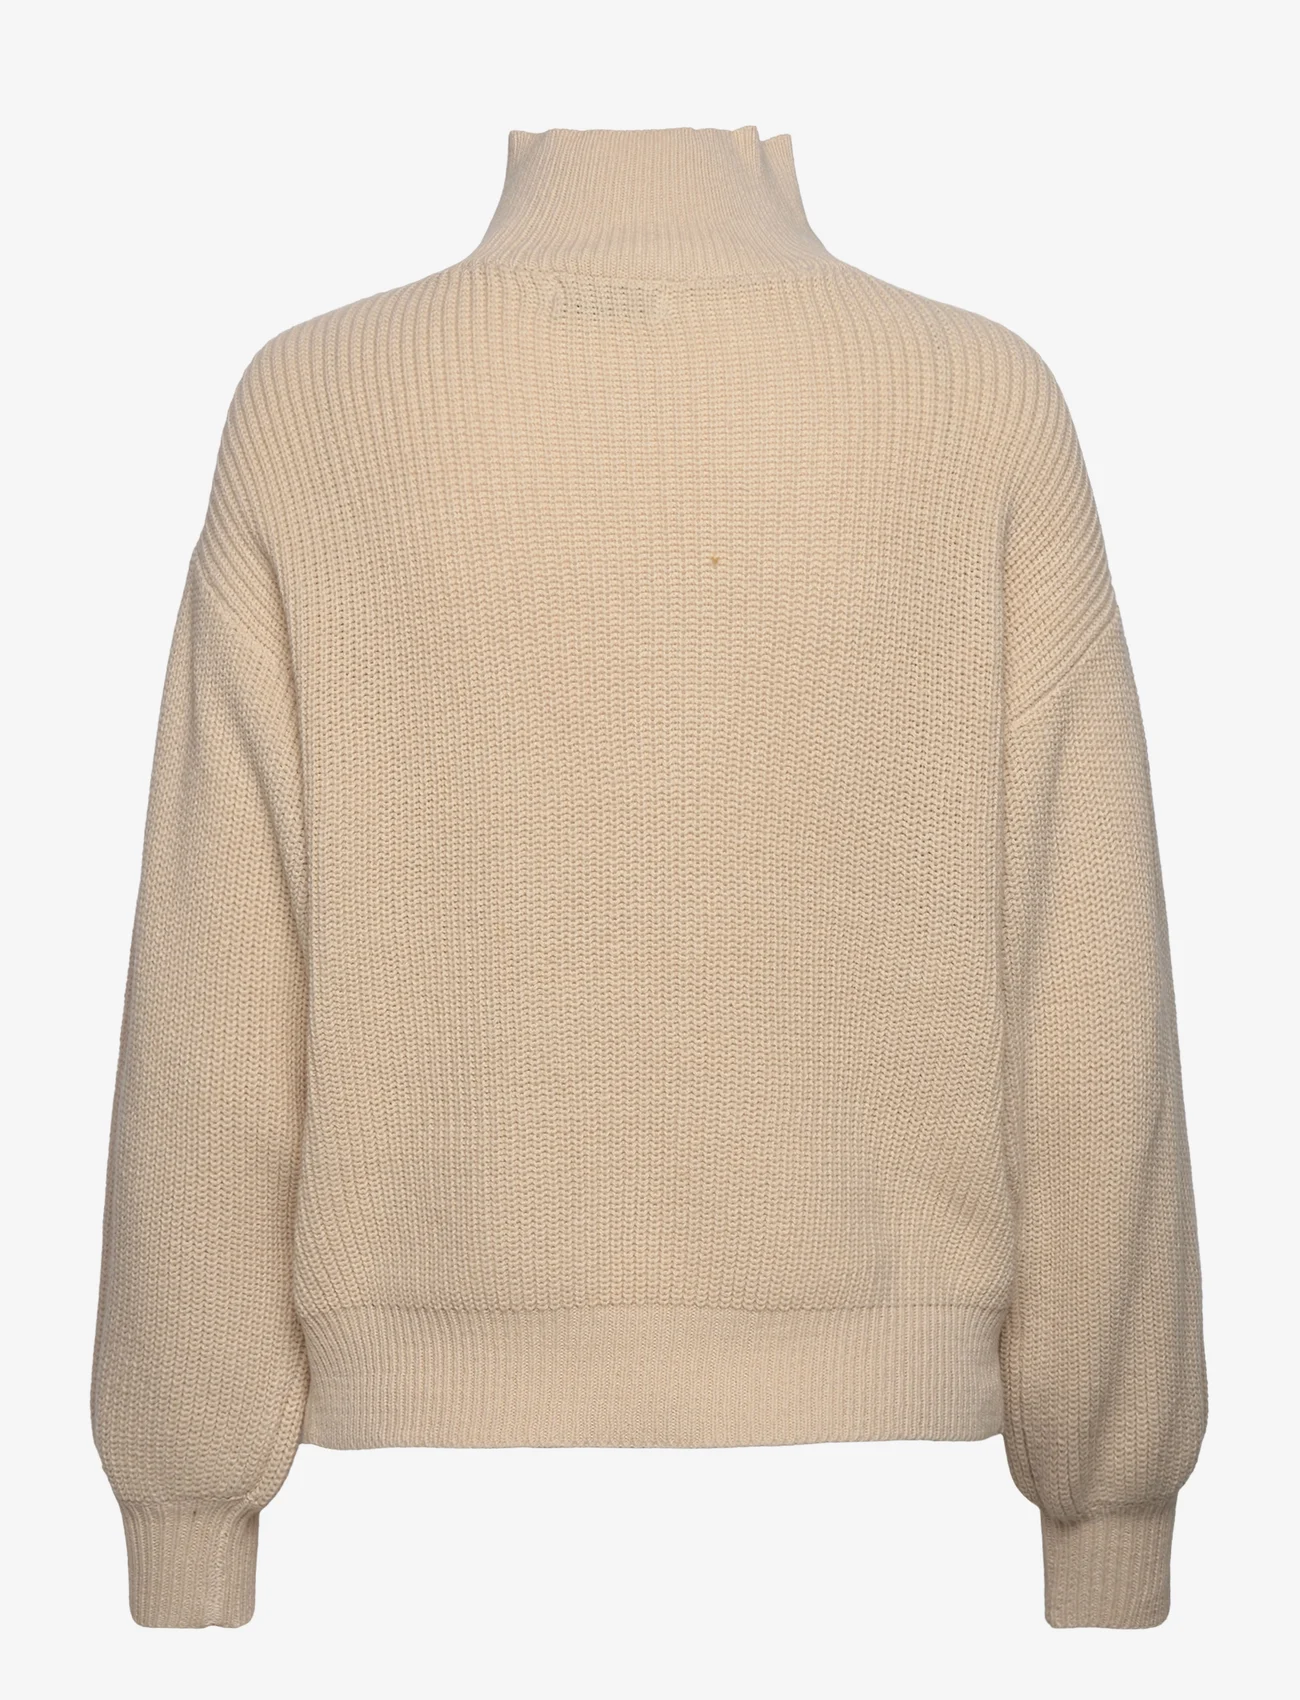 MSCH Copenhagen - MSCHSitara Abrielle Pullover - pullover - beige - 1